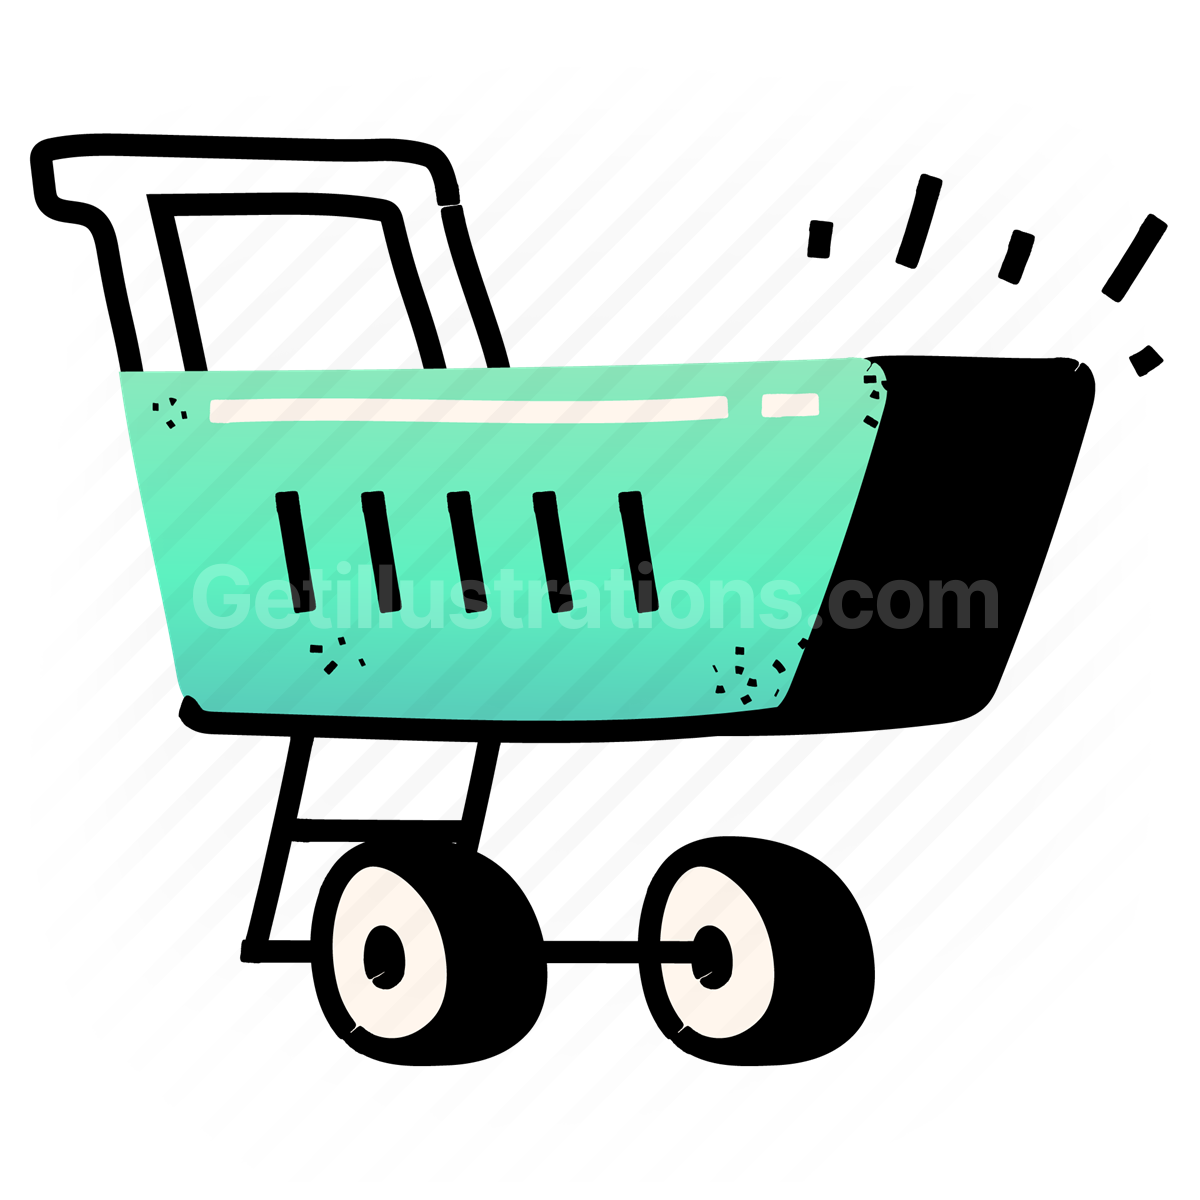 commerce, e-commerce, cart, purchase, shop